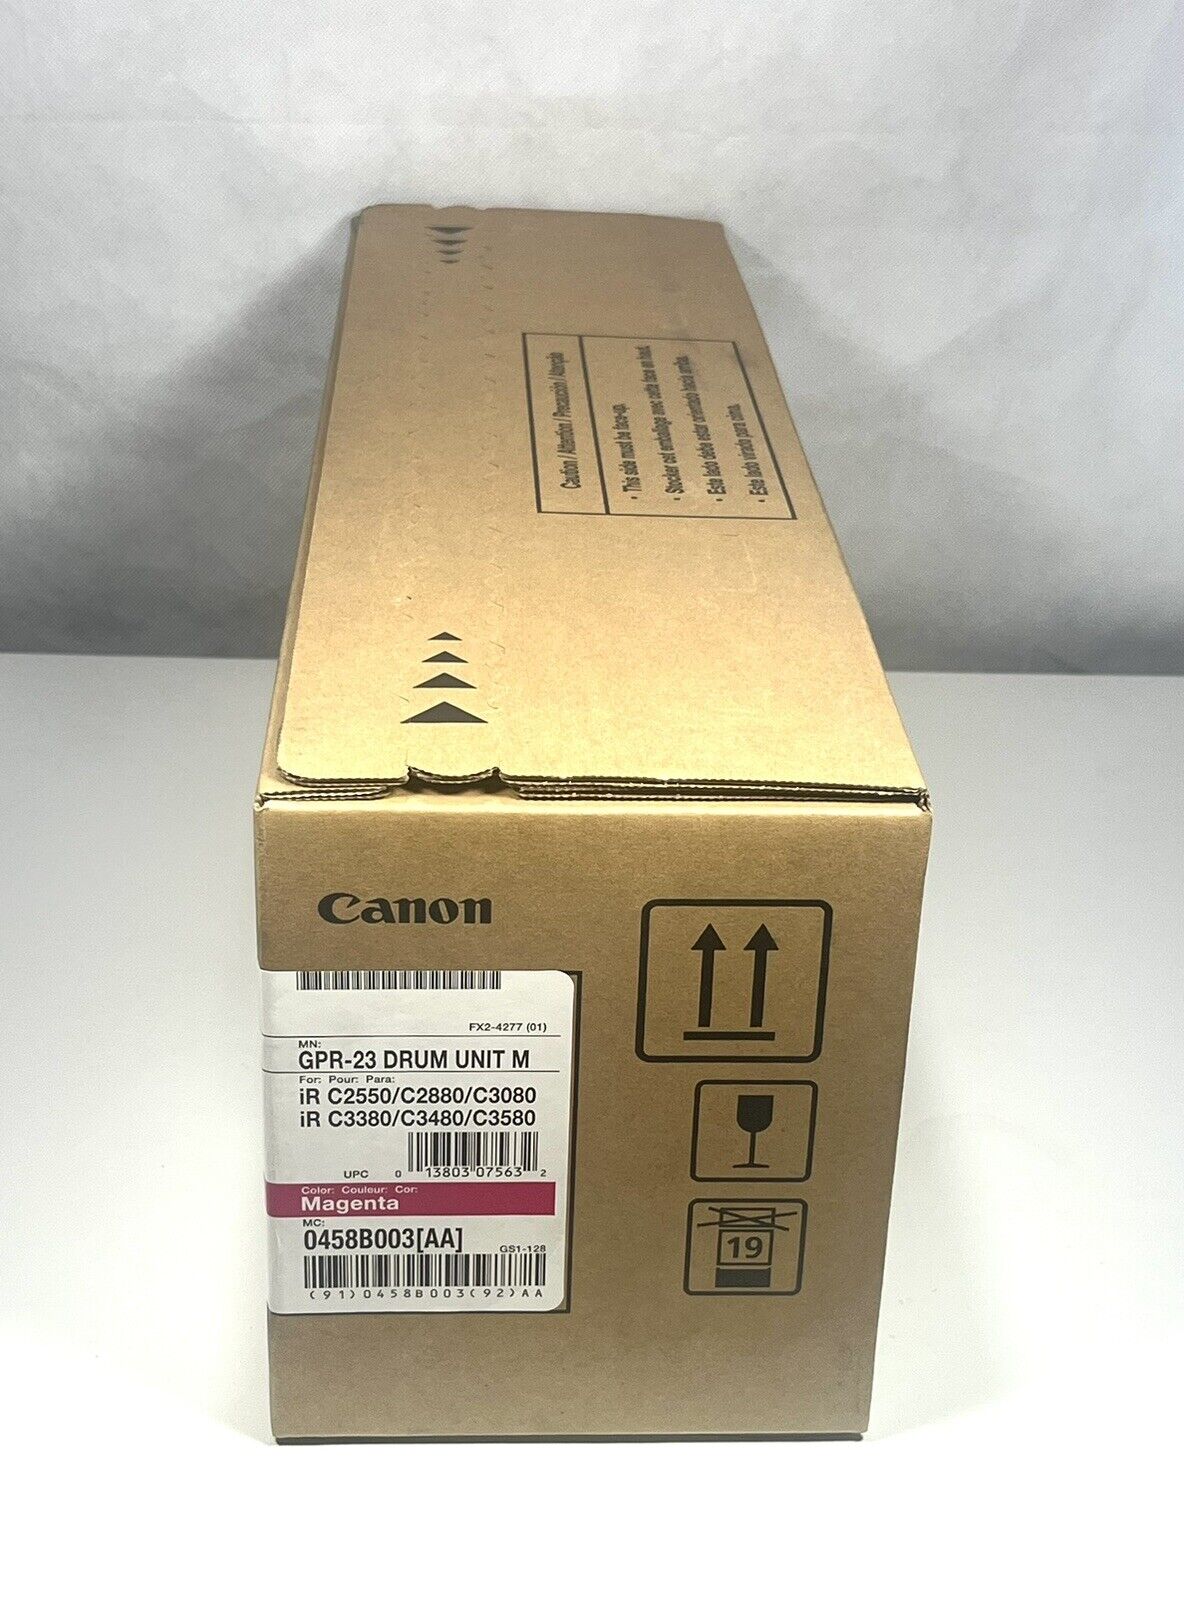 Canon GPR-23 0458B003 Genuine Magenta Drum Unit for iR C2550 C2880 C3080 C3380